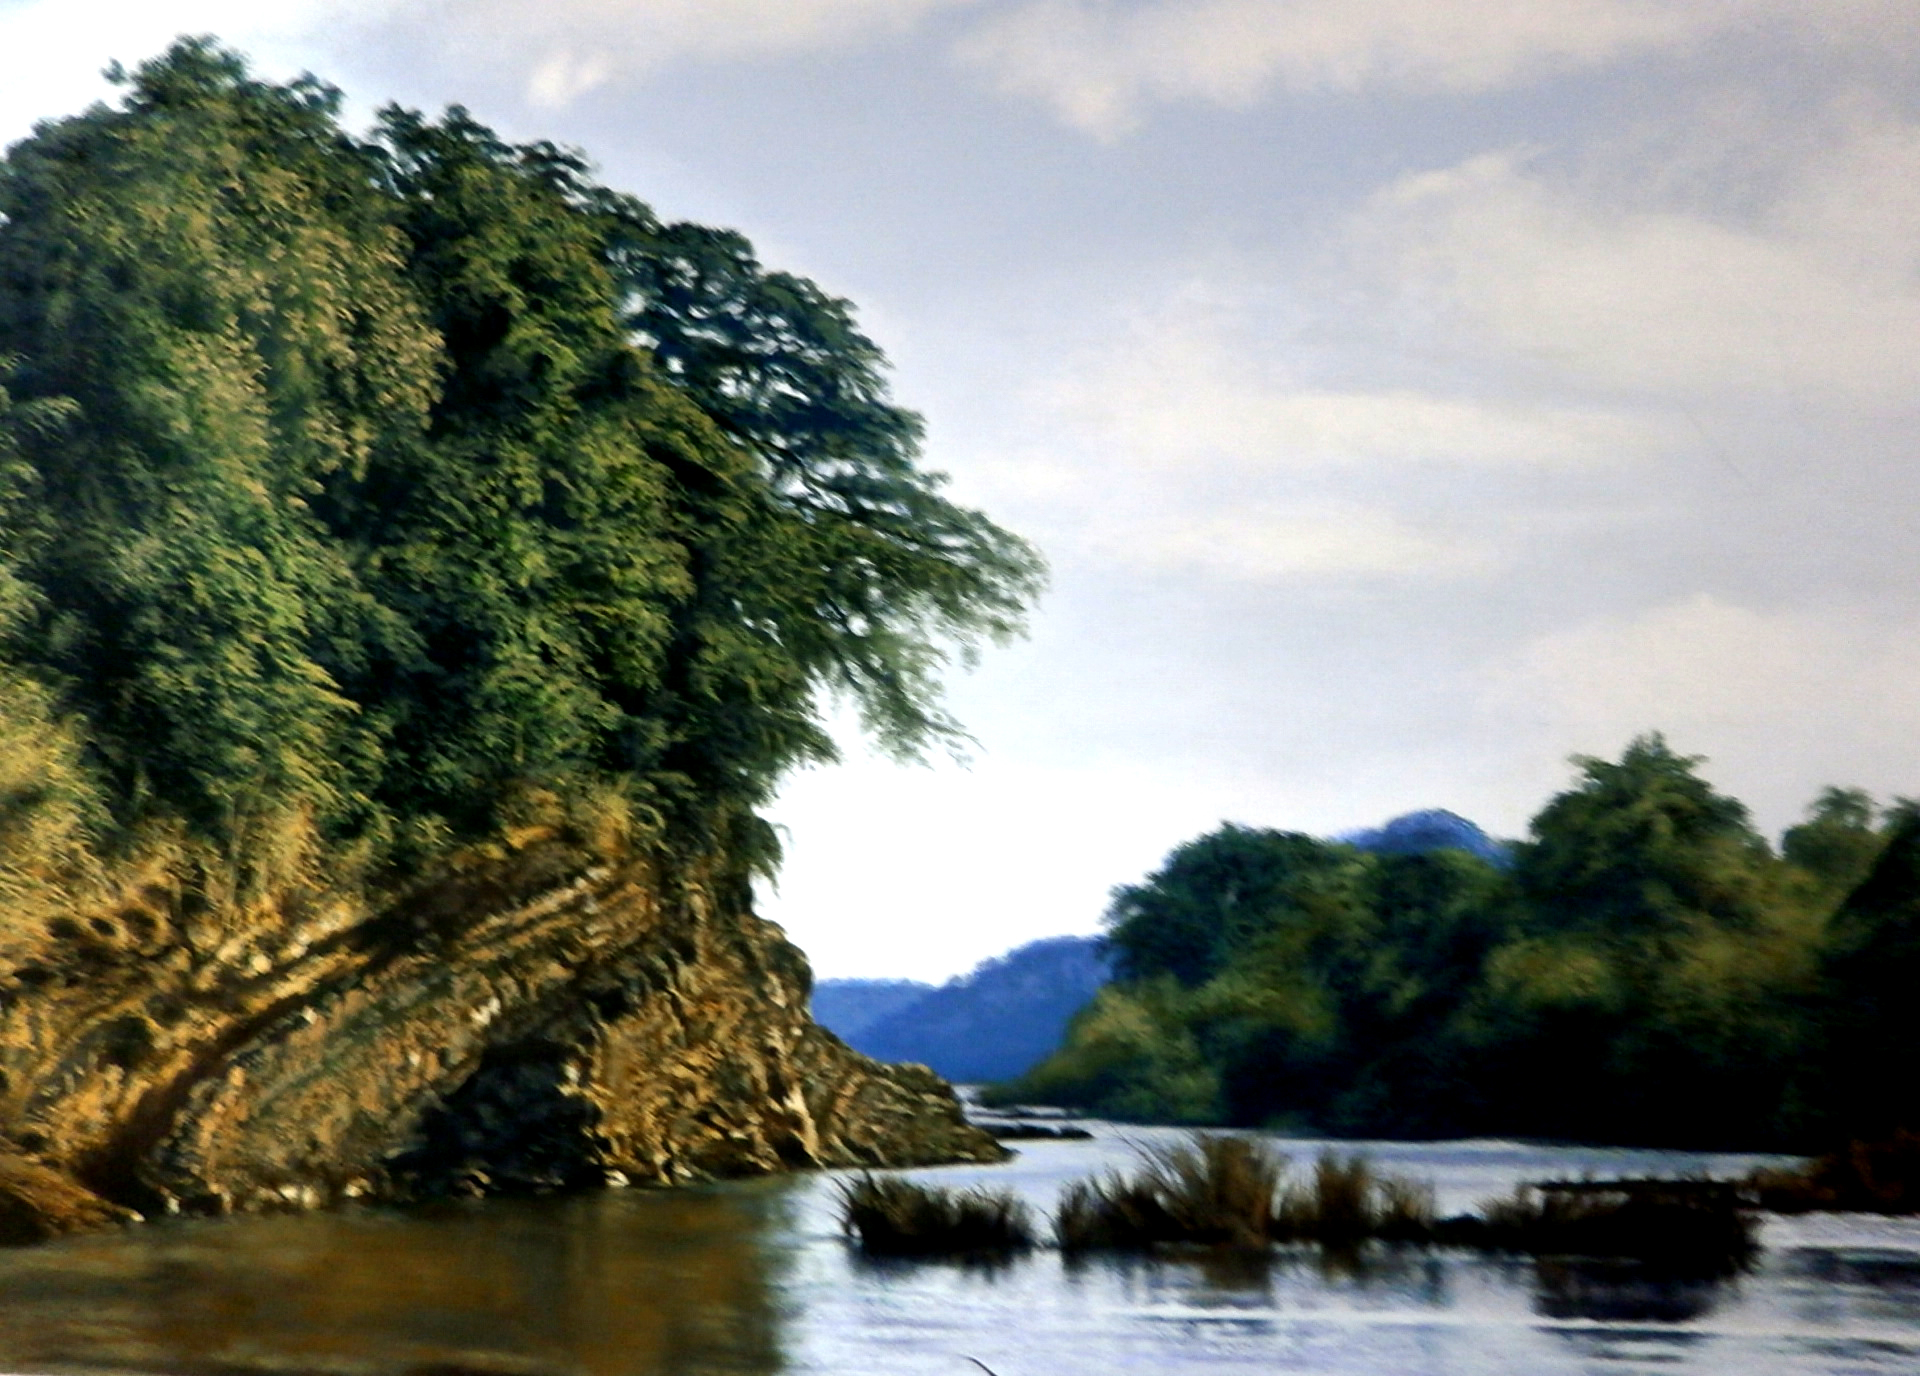 Peñasco junto al río, de José Perdomo, conquistó una beca de creación.